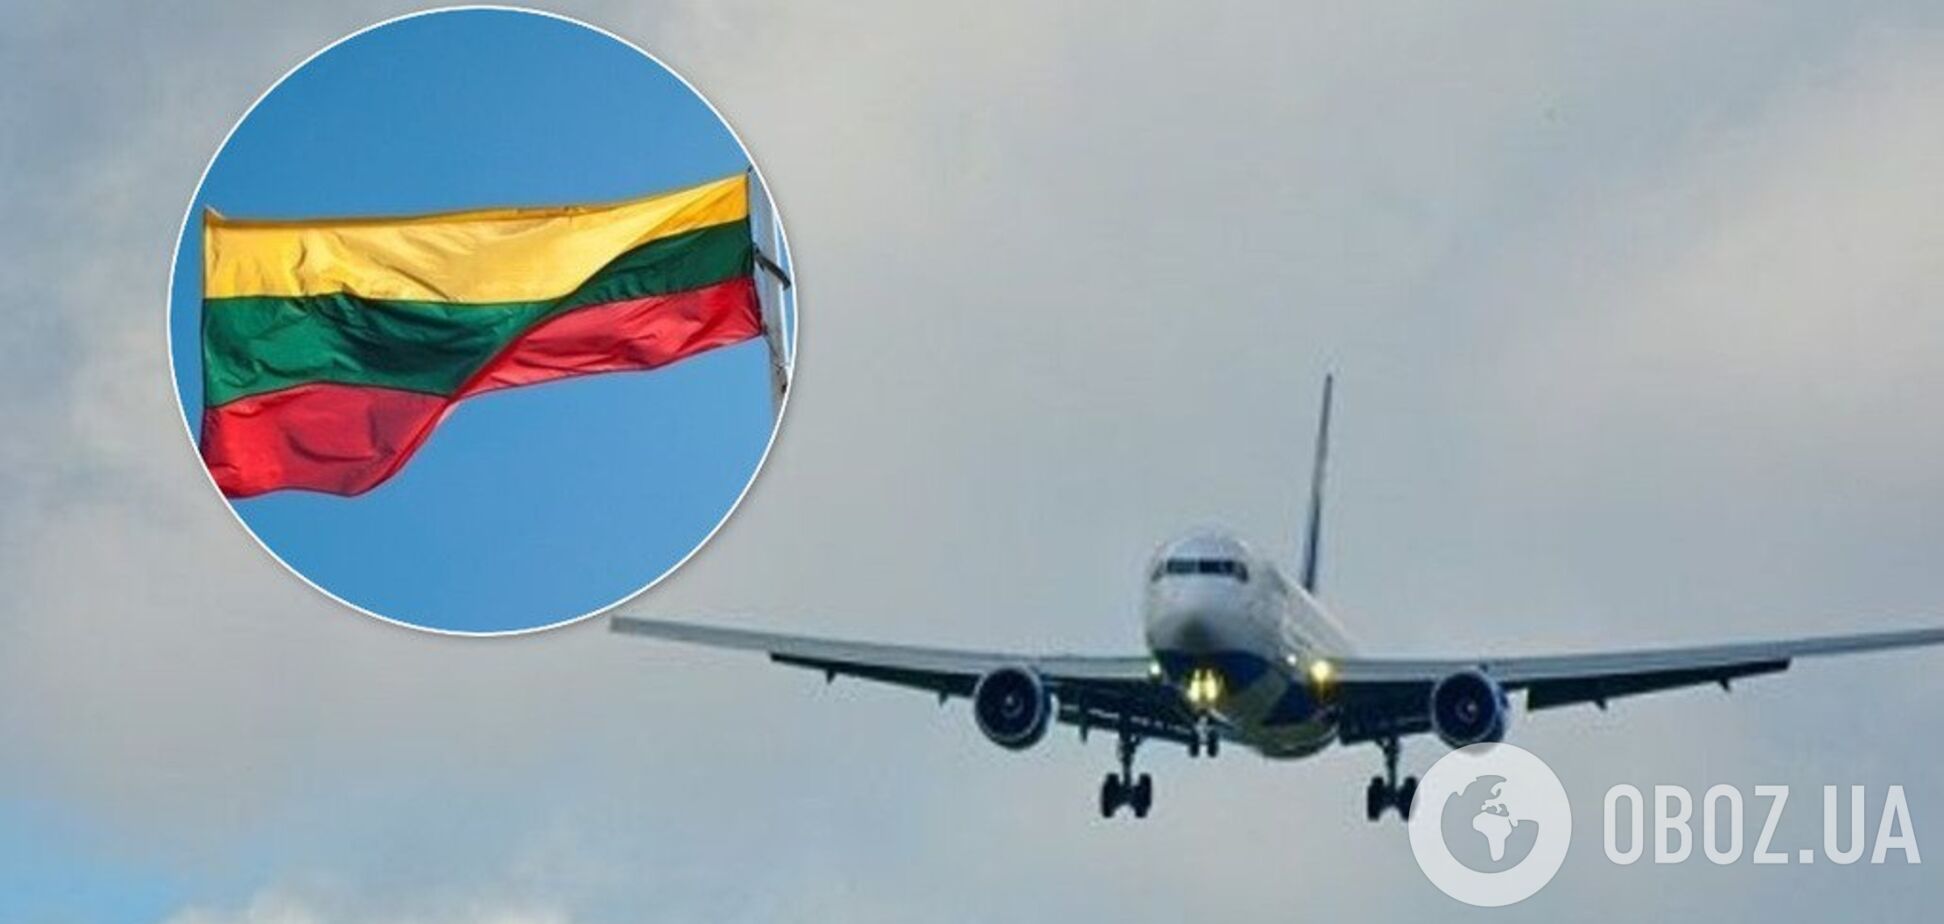 Самолет и прапор Литвы